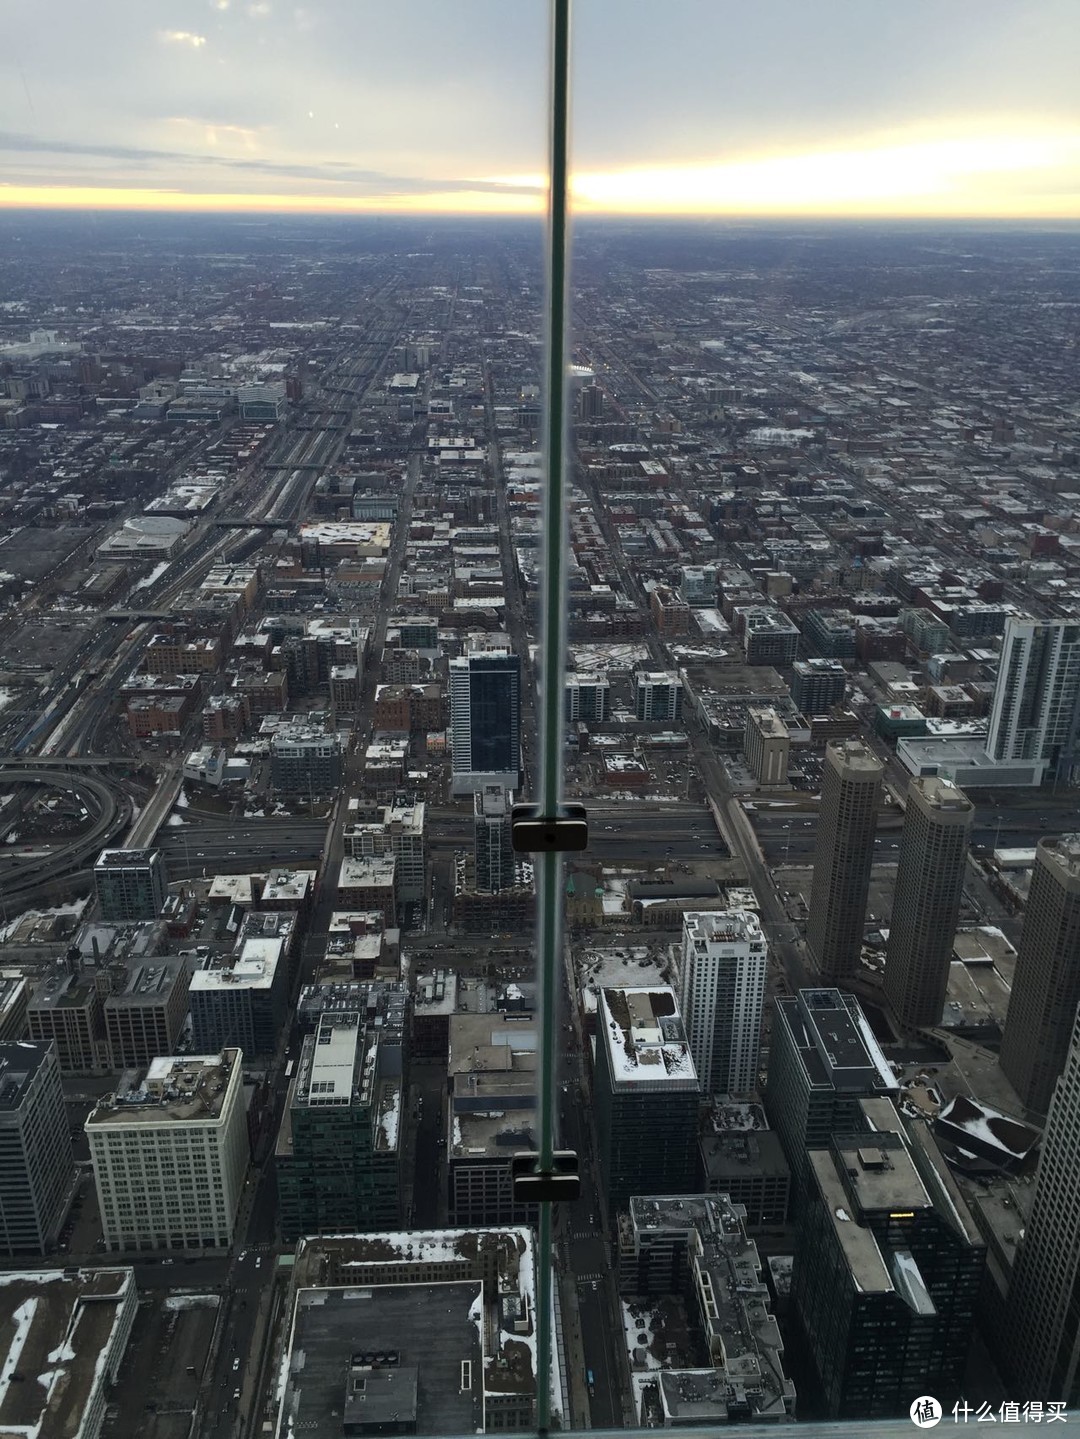 另一个角度俯瞰芝加哥